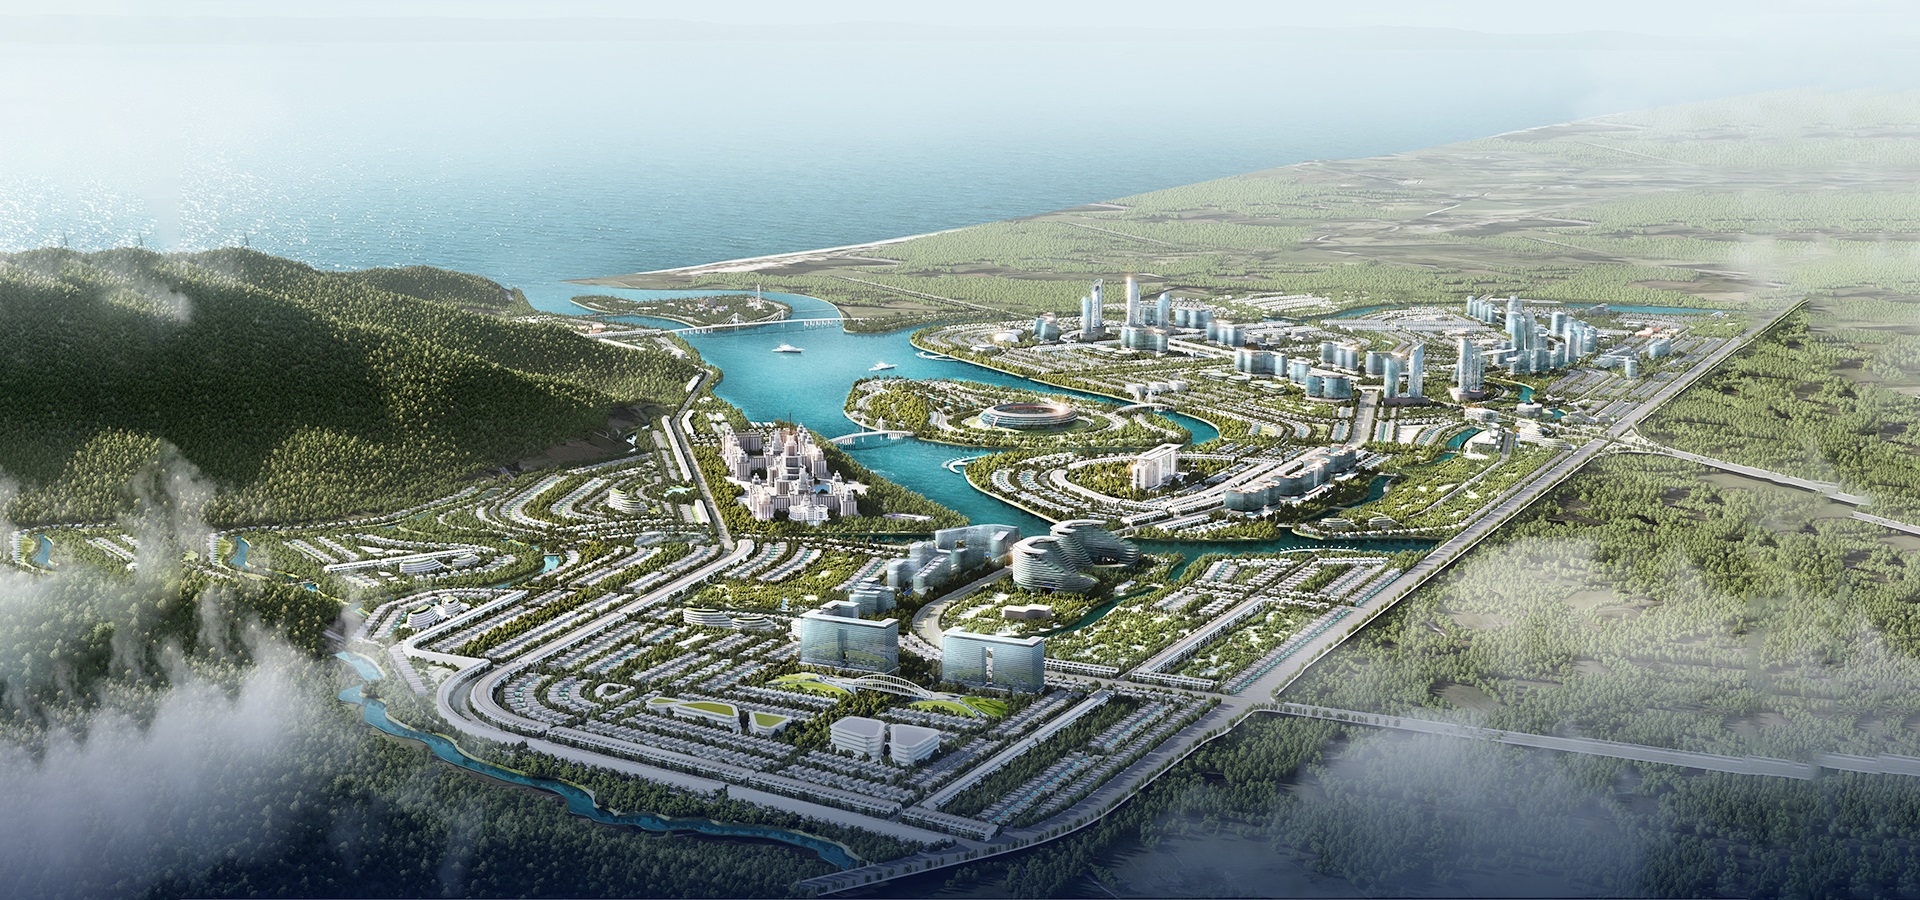 Nghiên cứu và chuẩn bị kỹ lưỡng cho kế hoạch dài hơi, là xây dựng một “thành phố AI” ven biển